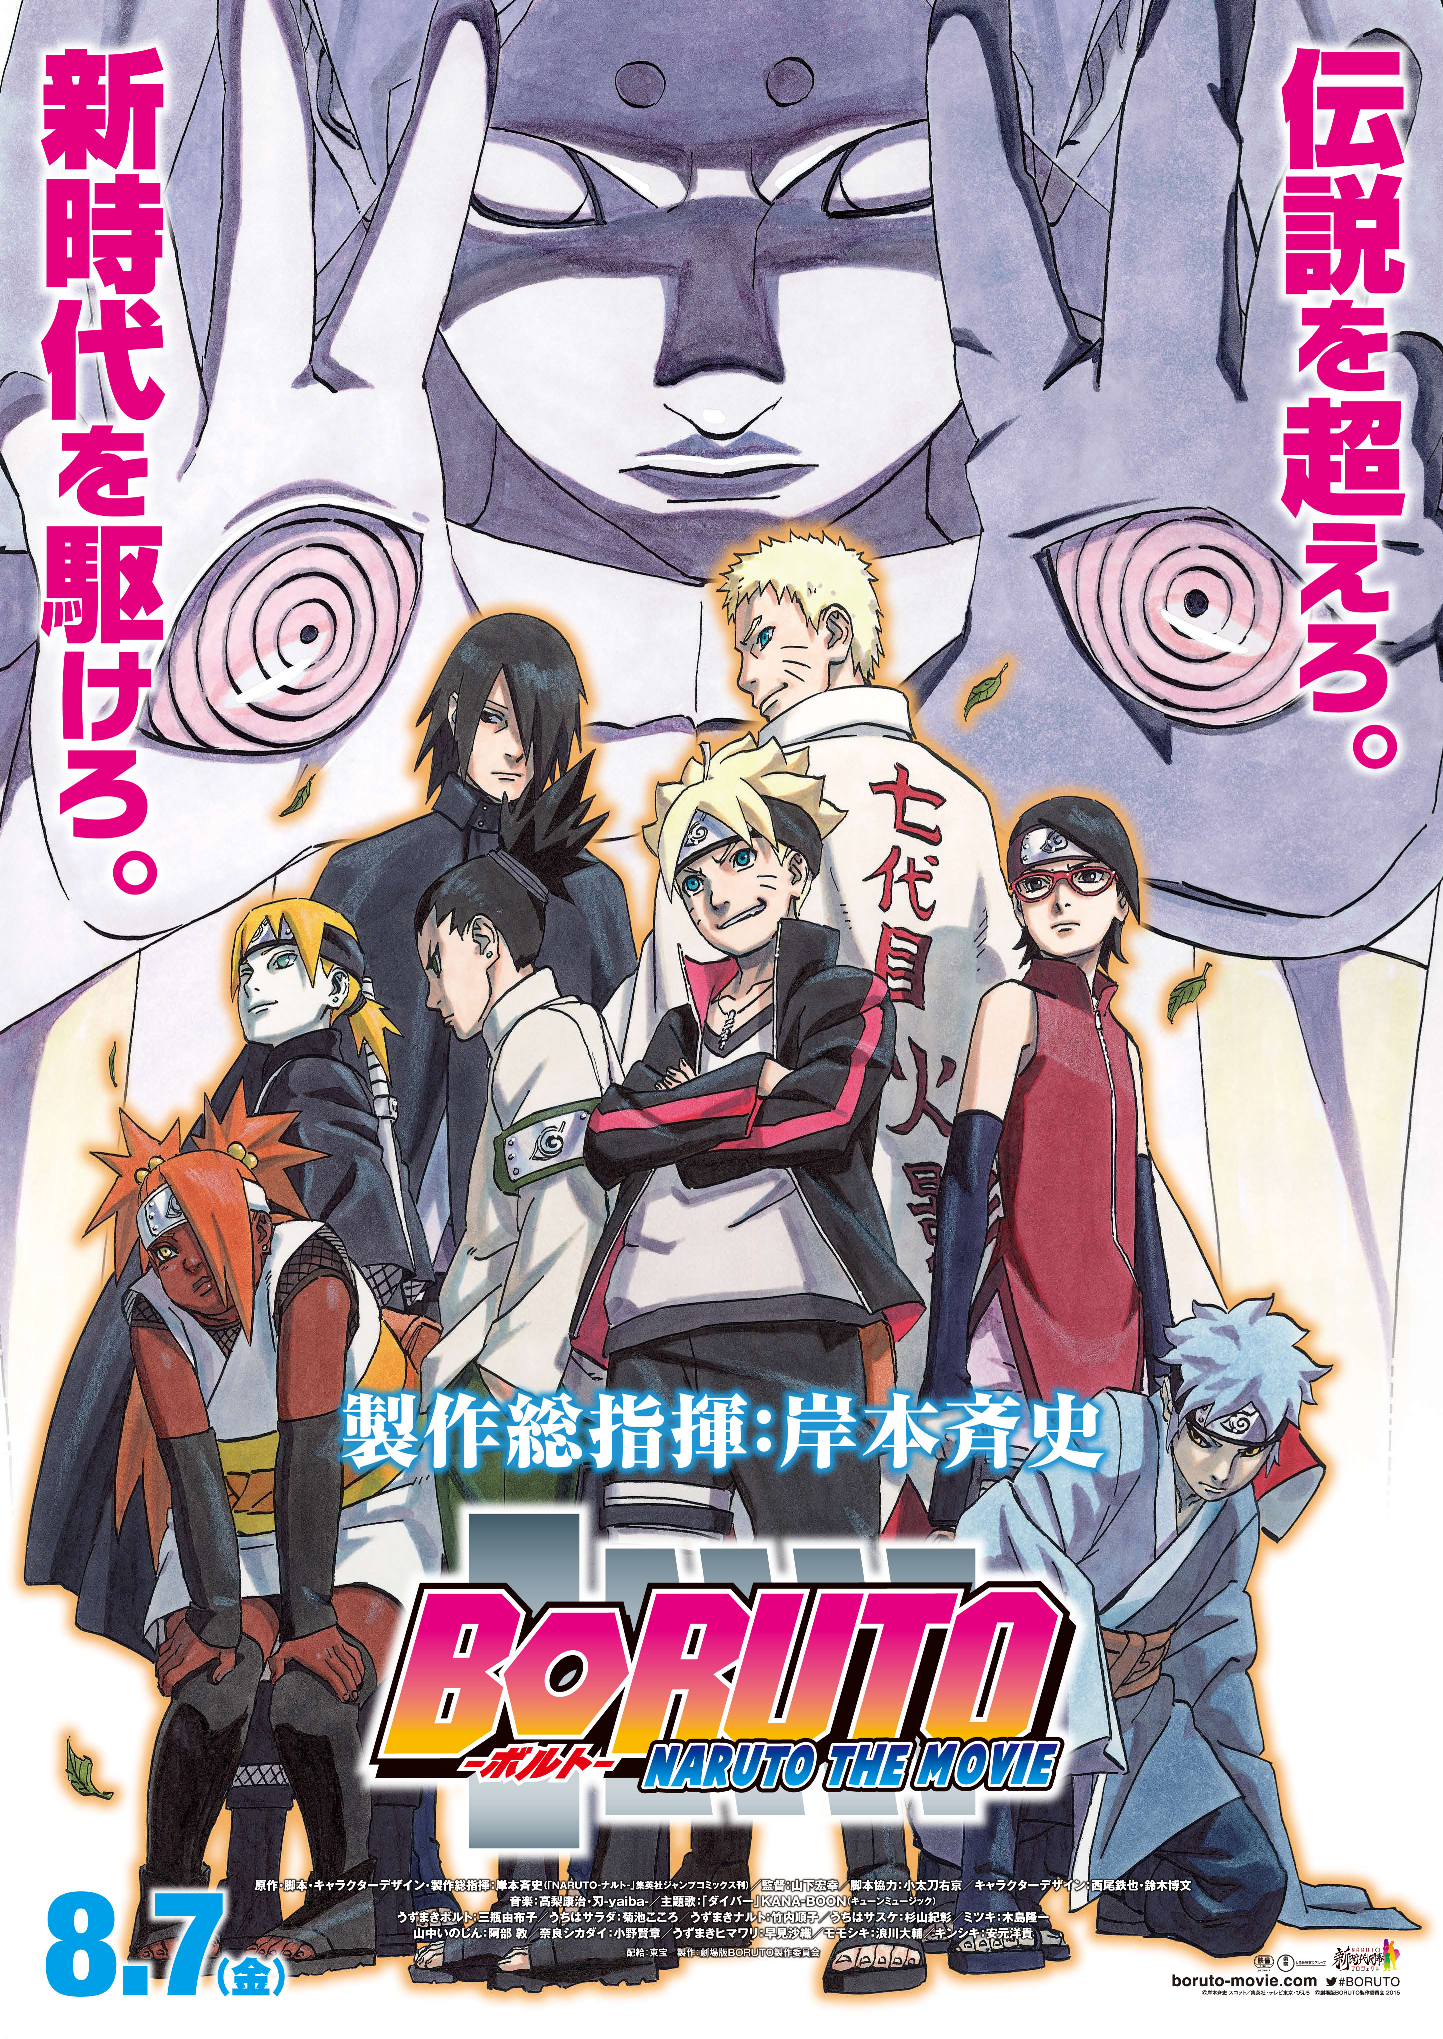 Dvds Boruto Naruto Next Generation atualizado no último episódio lançado